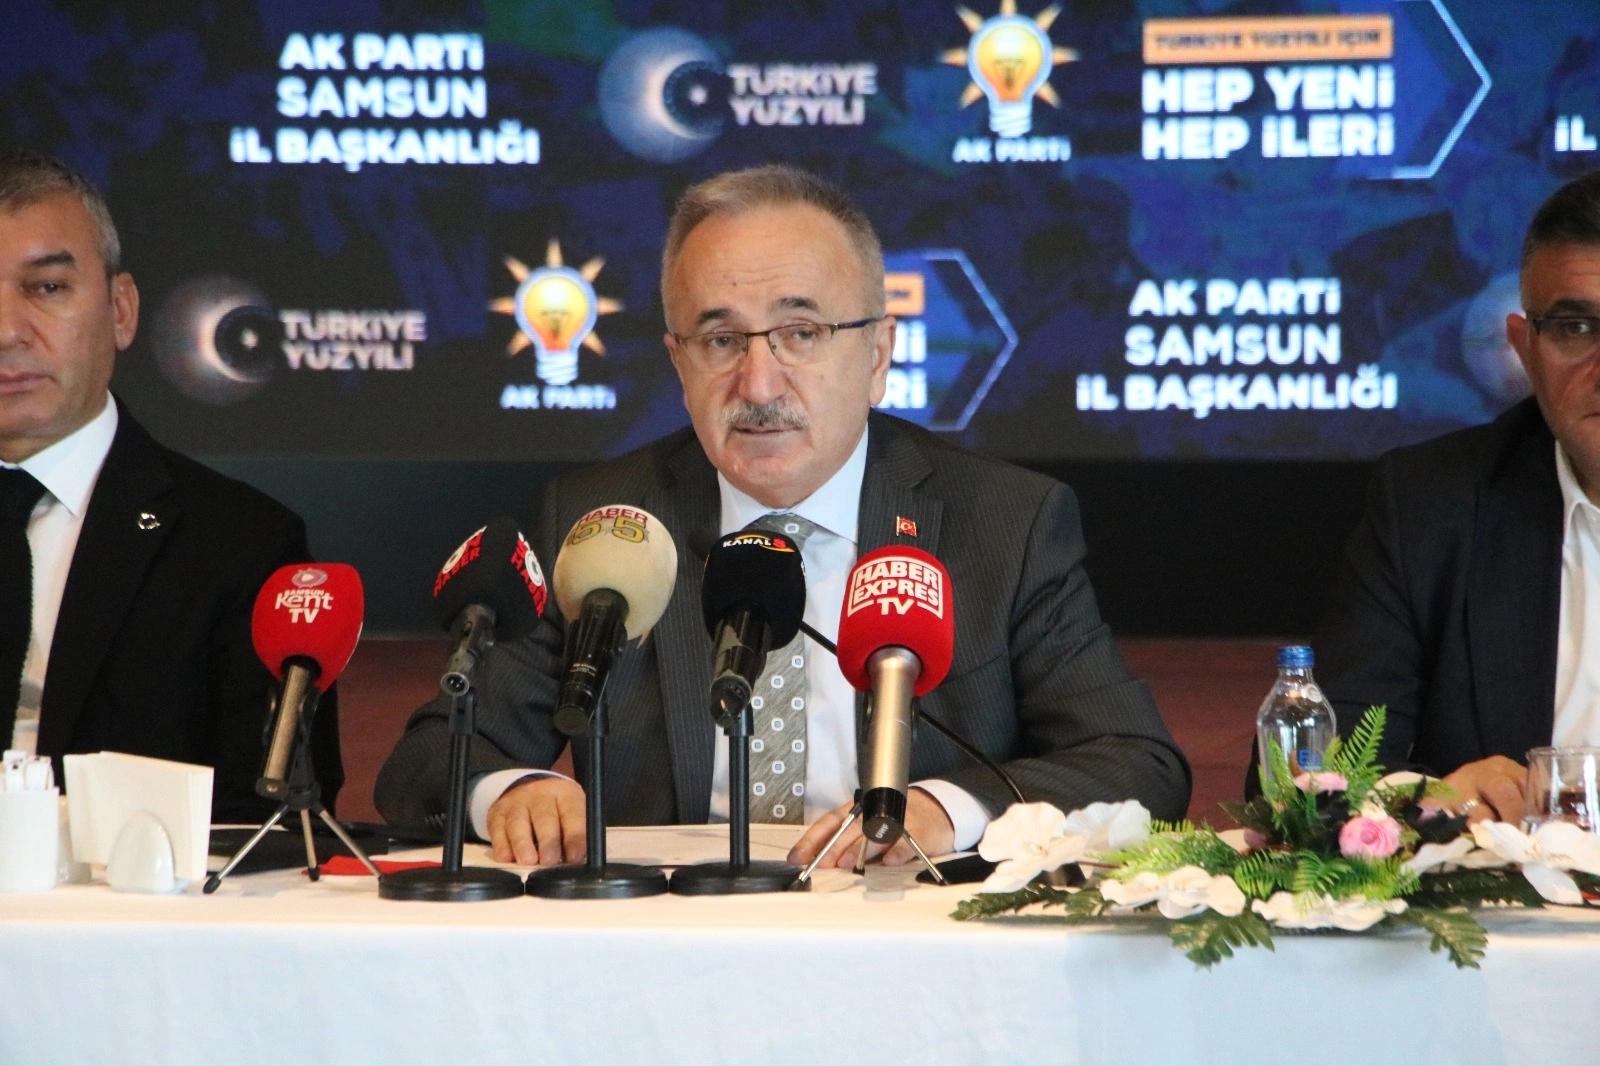 AK Parti Samsun İl Başkanı Mehmet Köse değişim diyen partilere gönderme yaptı